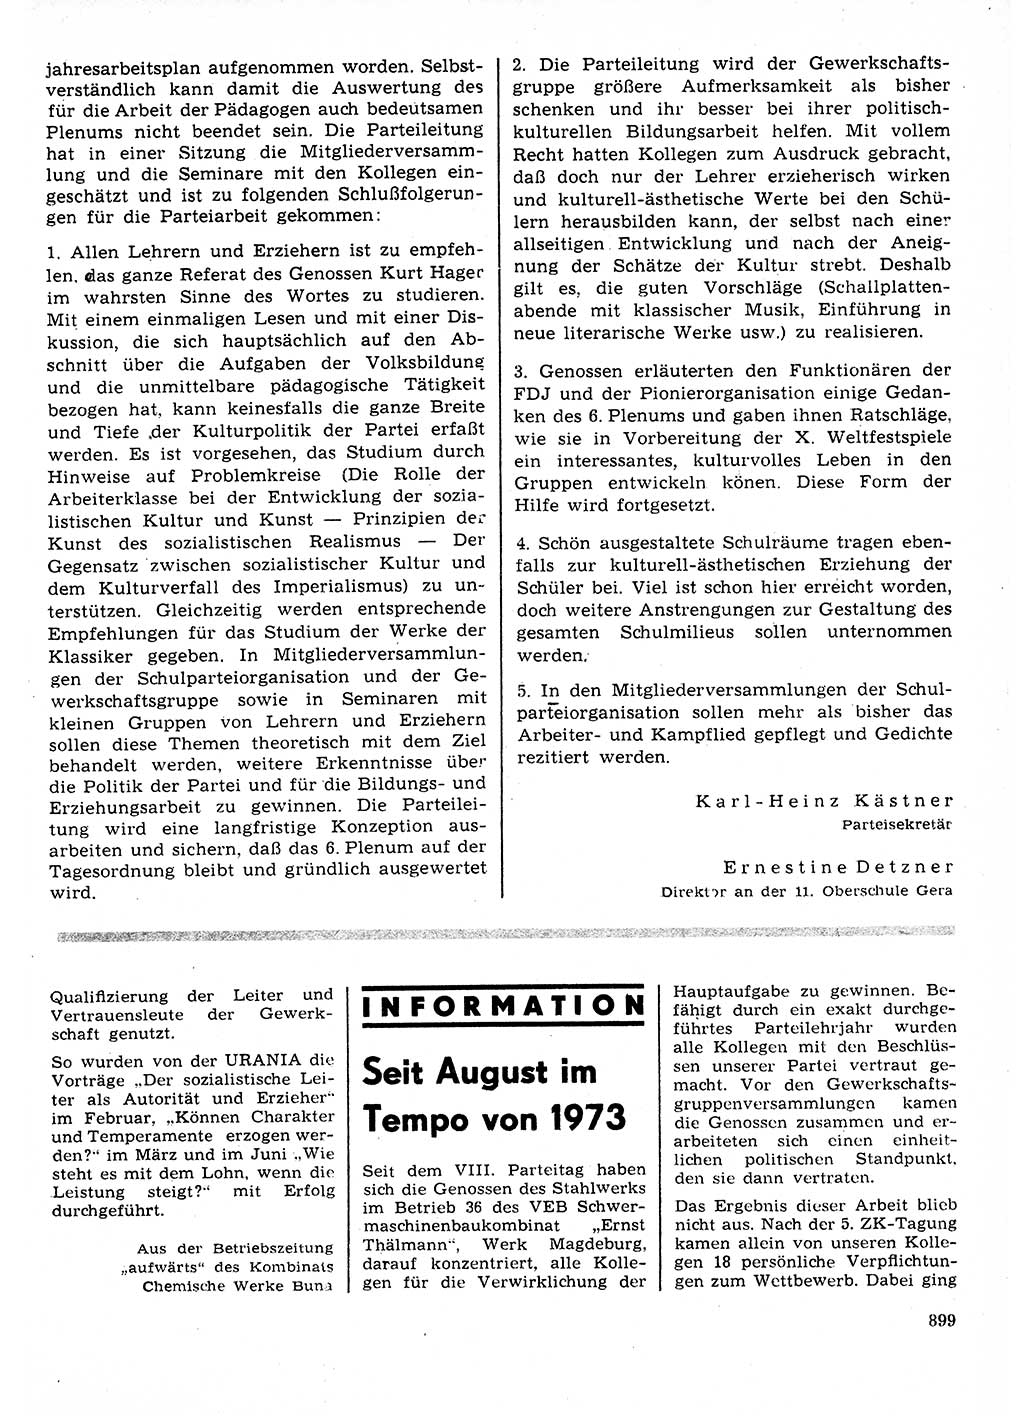 Neuer Weg (NW), Organ des Zentralkomitees (ZK) der SED (Sozialistische Einheitspartei Deutschlands) für Fragen des Parteilebens, 27. Jahrgang [Deutsche Demokratische Republik (DDR)] 1972, Seite 899 (NW ZK SED DDR 1972, S. 899)